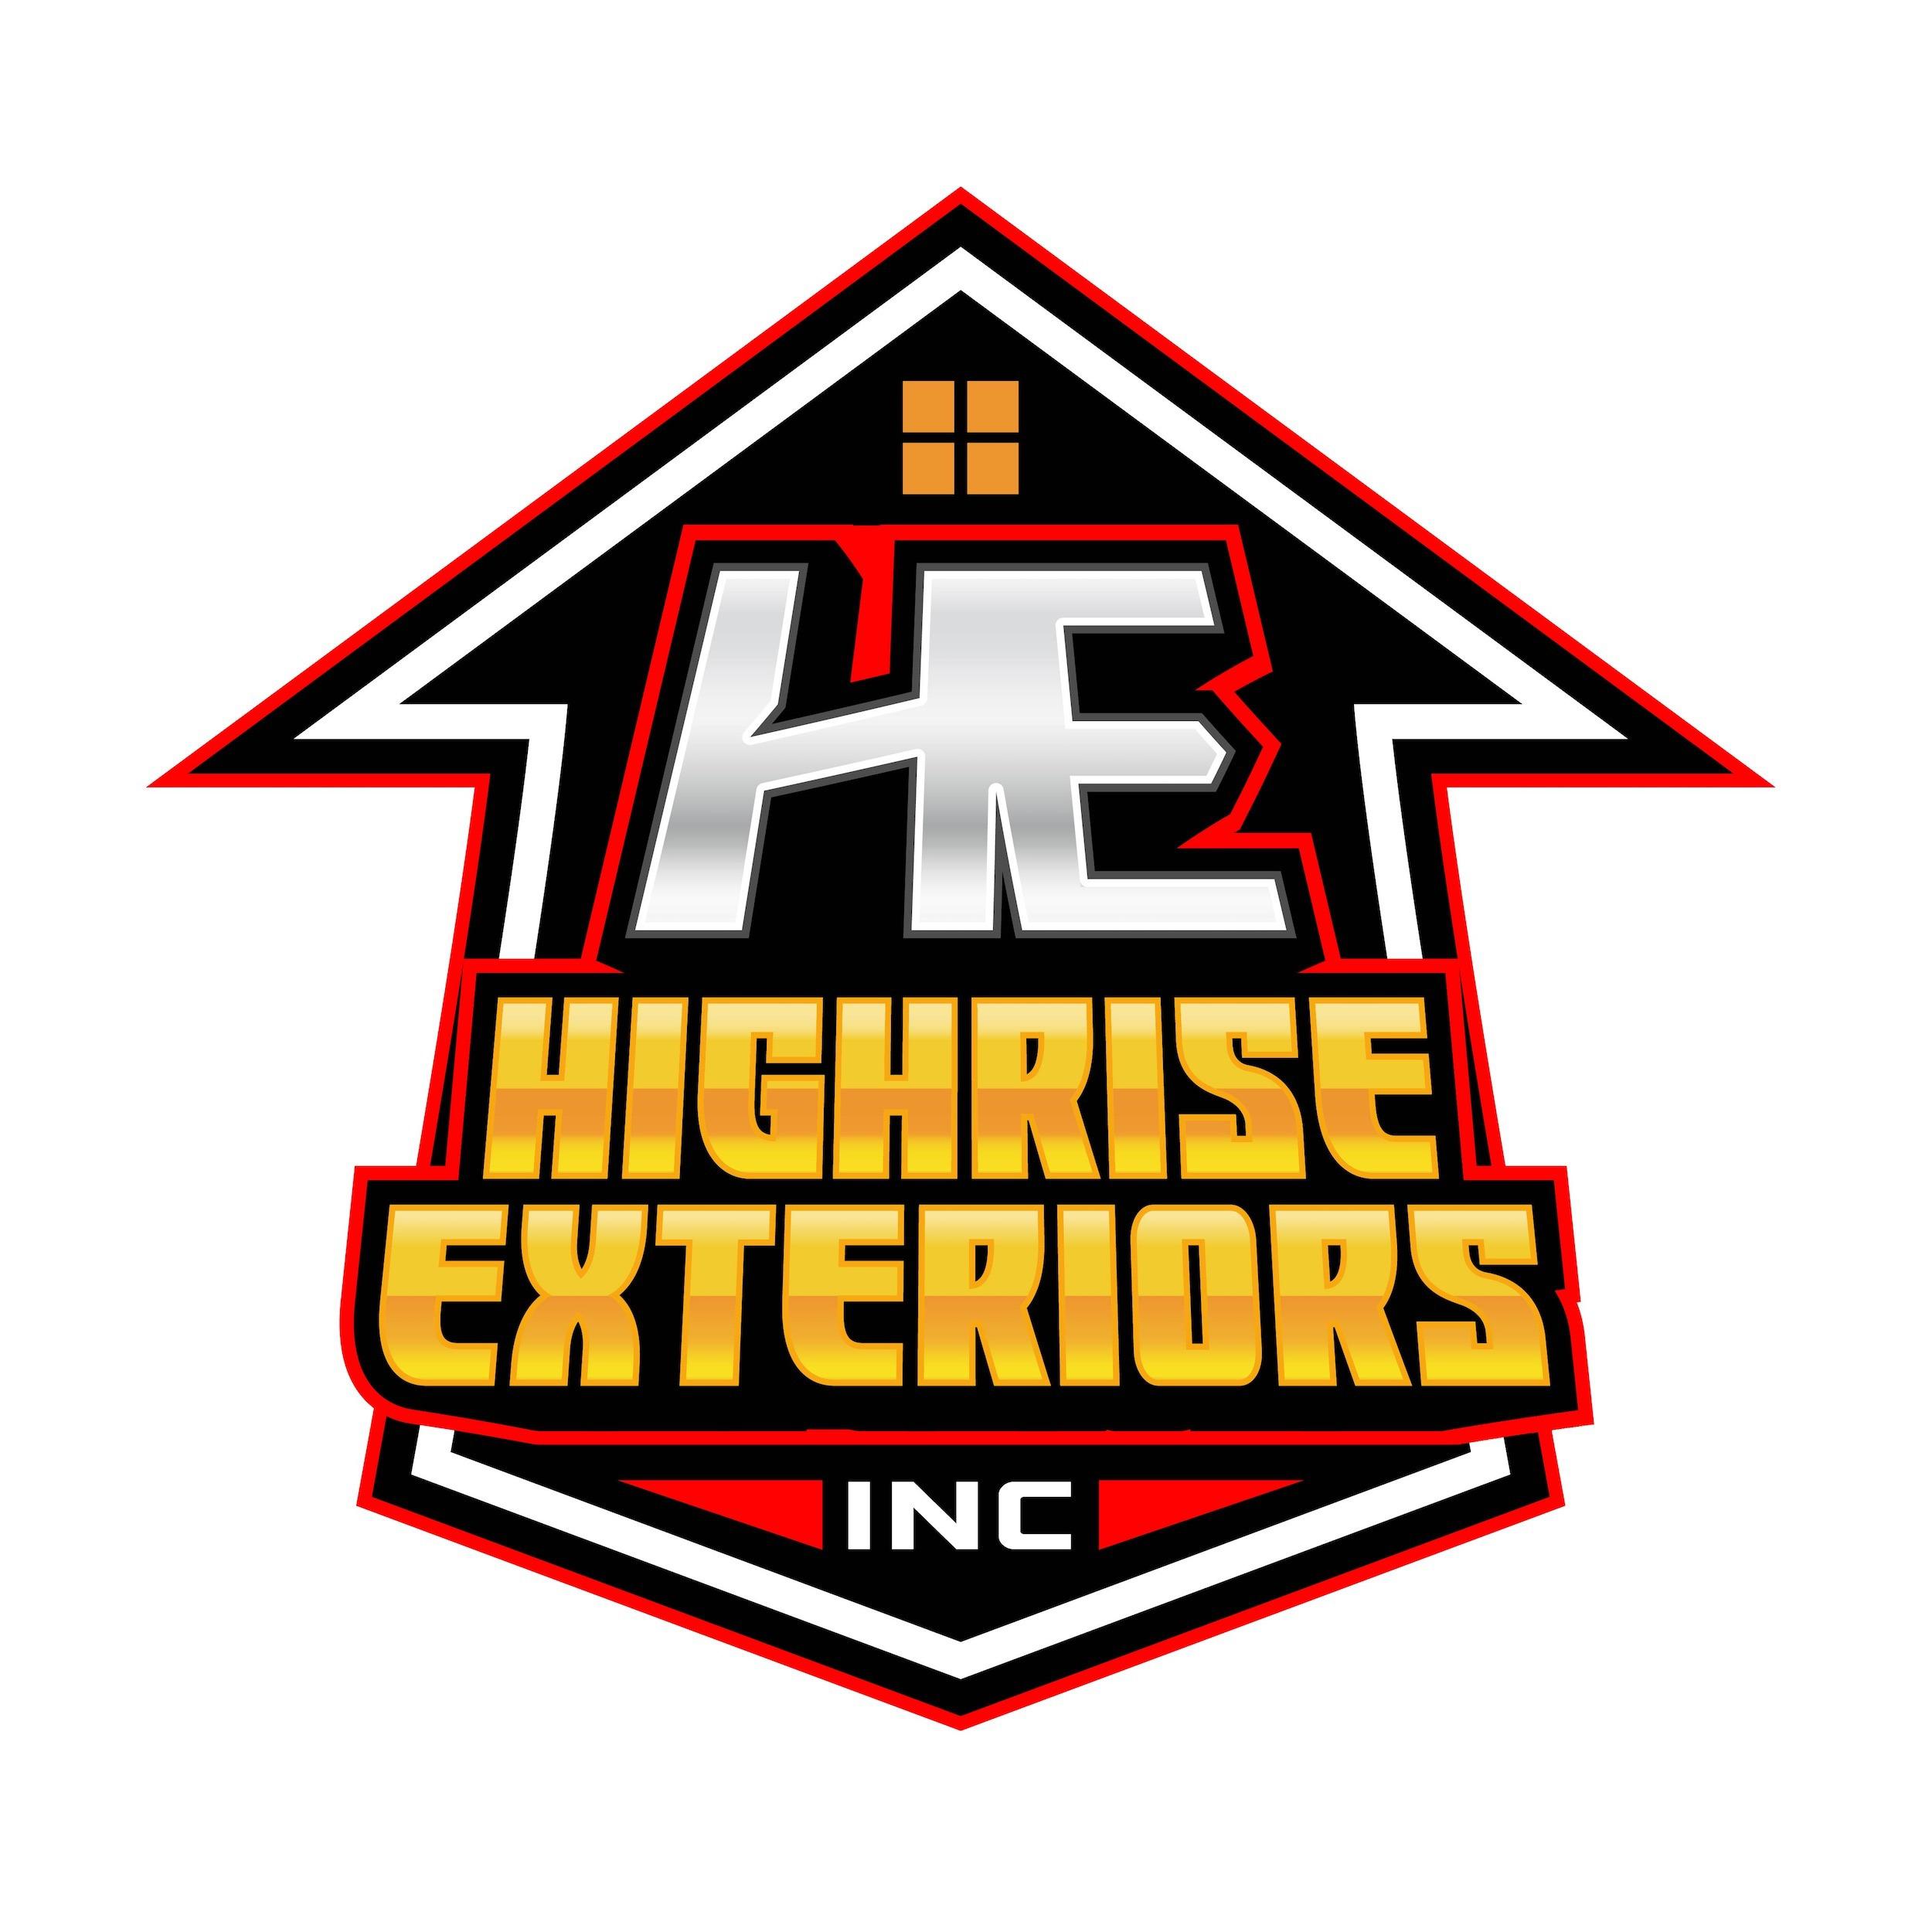 HighRise Exteriors Inc.